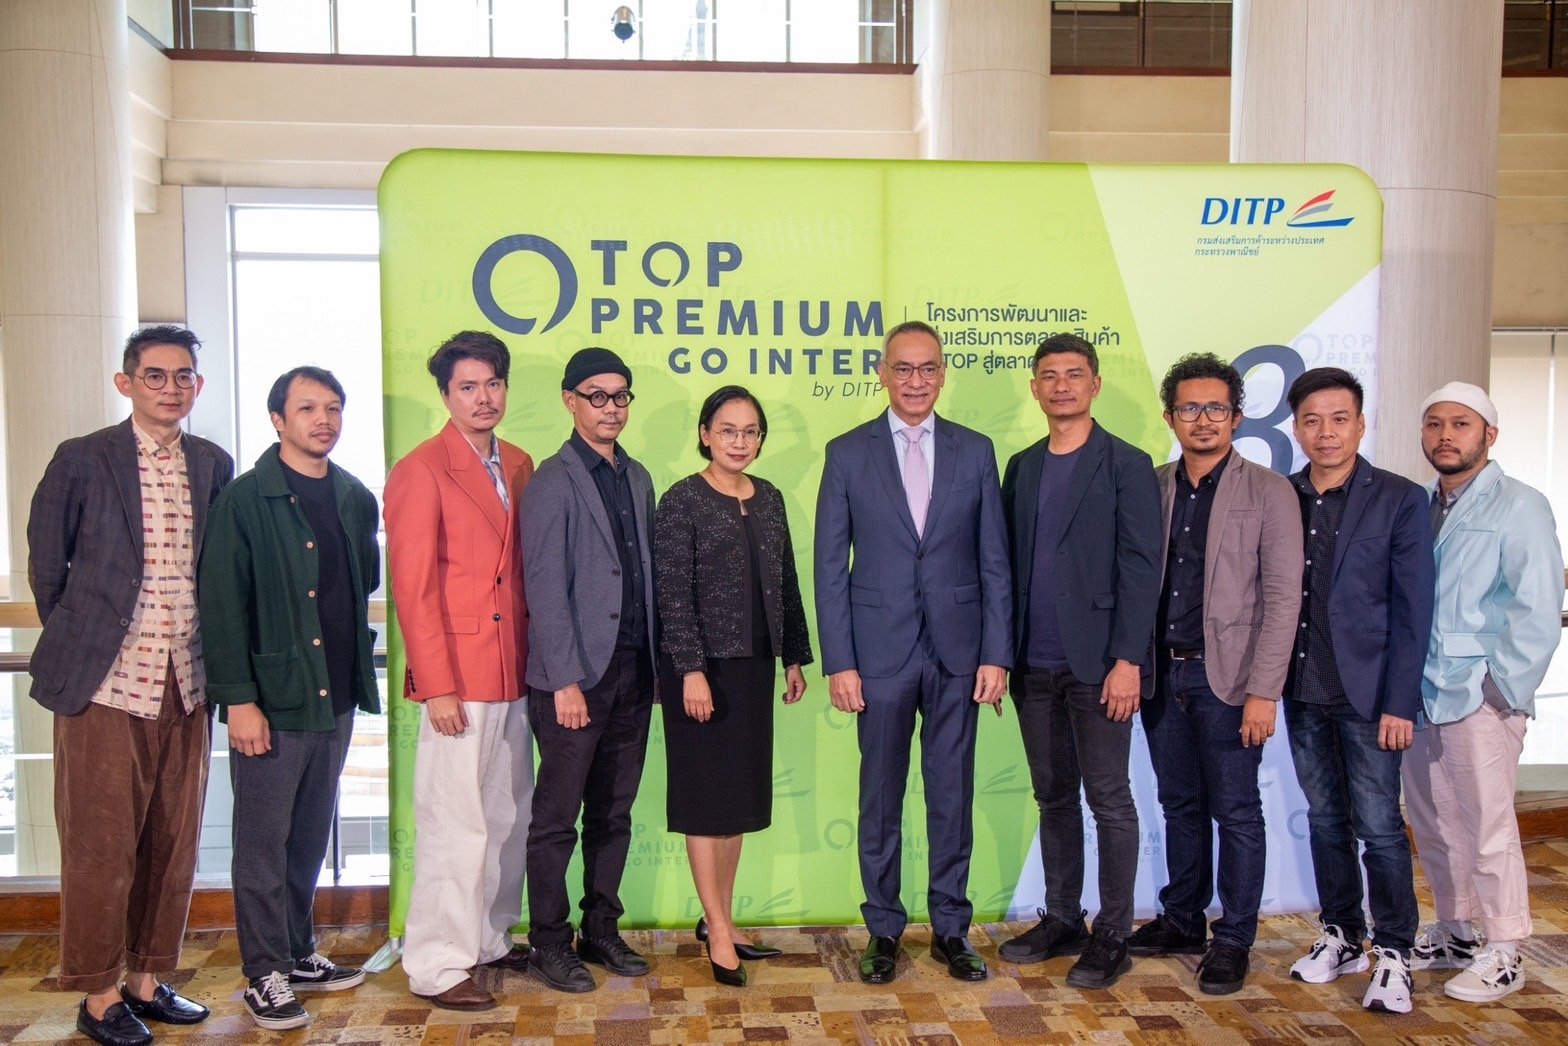 กระทรวงพาณิชย์ เปิดตัว OTOP Premium Go Inter by DITP ปีที่ 8 ดึงจุดแข็งอัตลักษณ์ Soft Power ท้องถิ่นทั่วไทยปั้นแบรนด์ไทยโกอินเตอร์